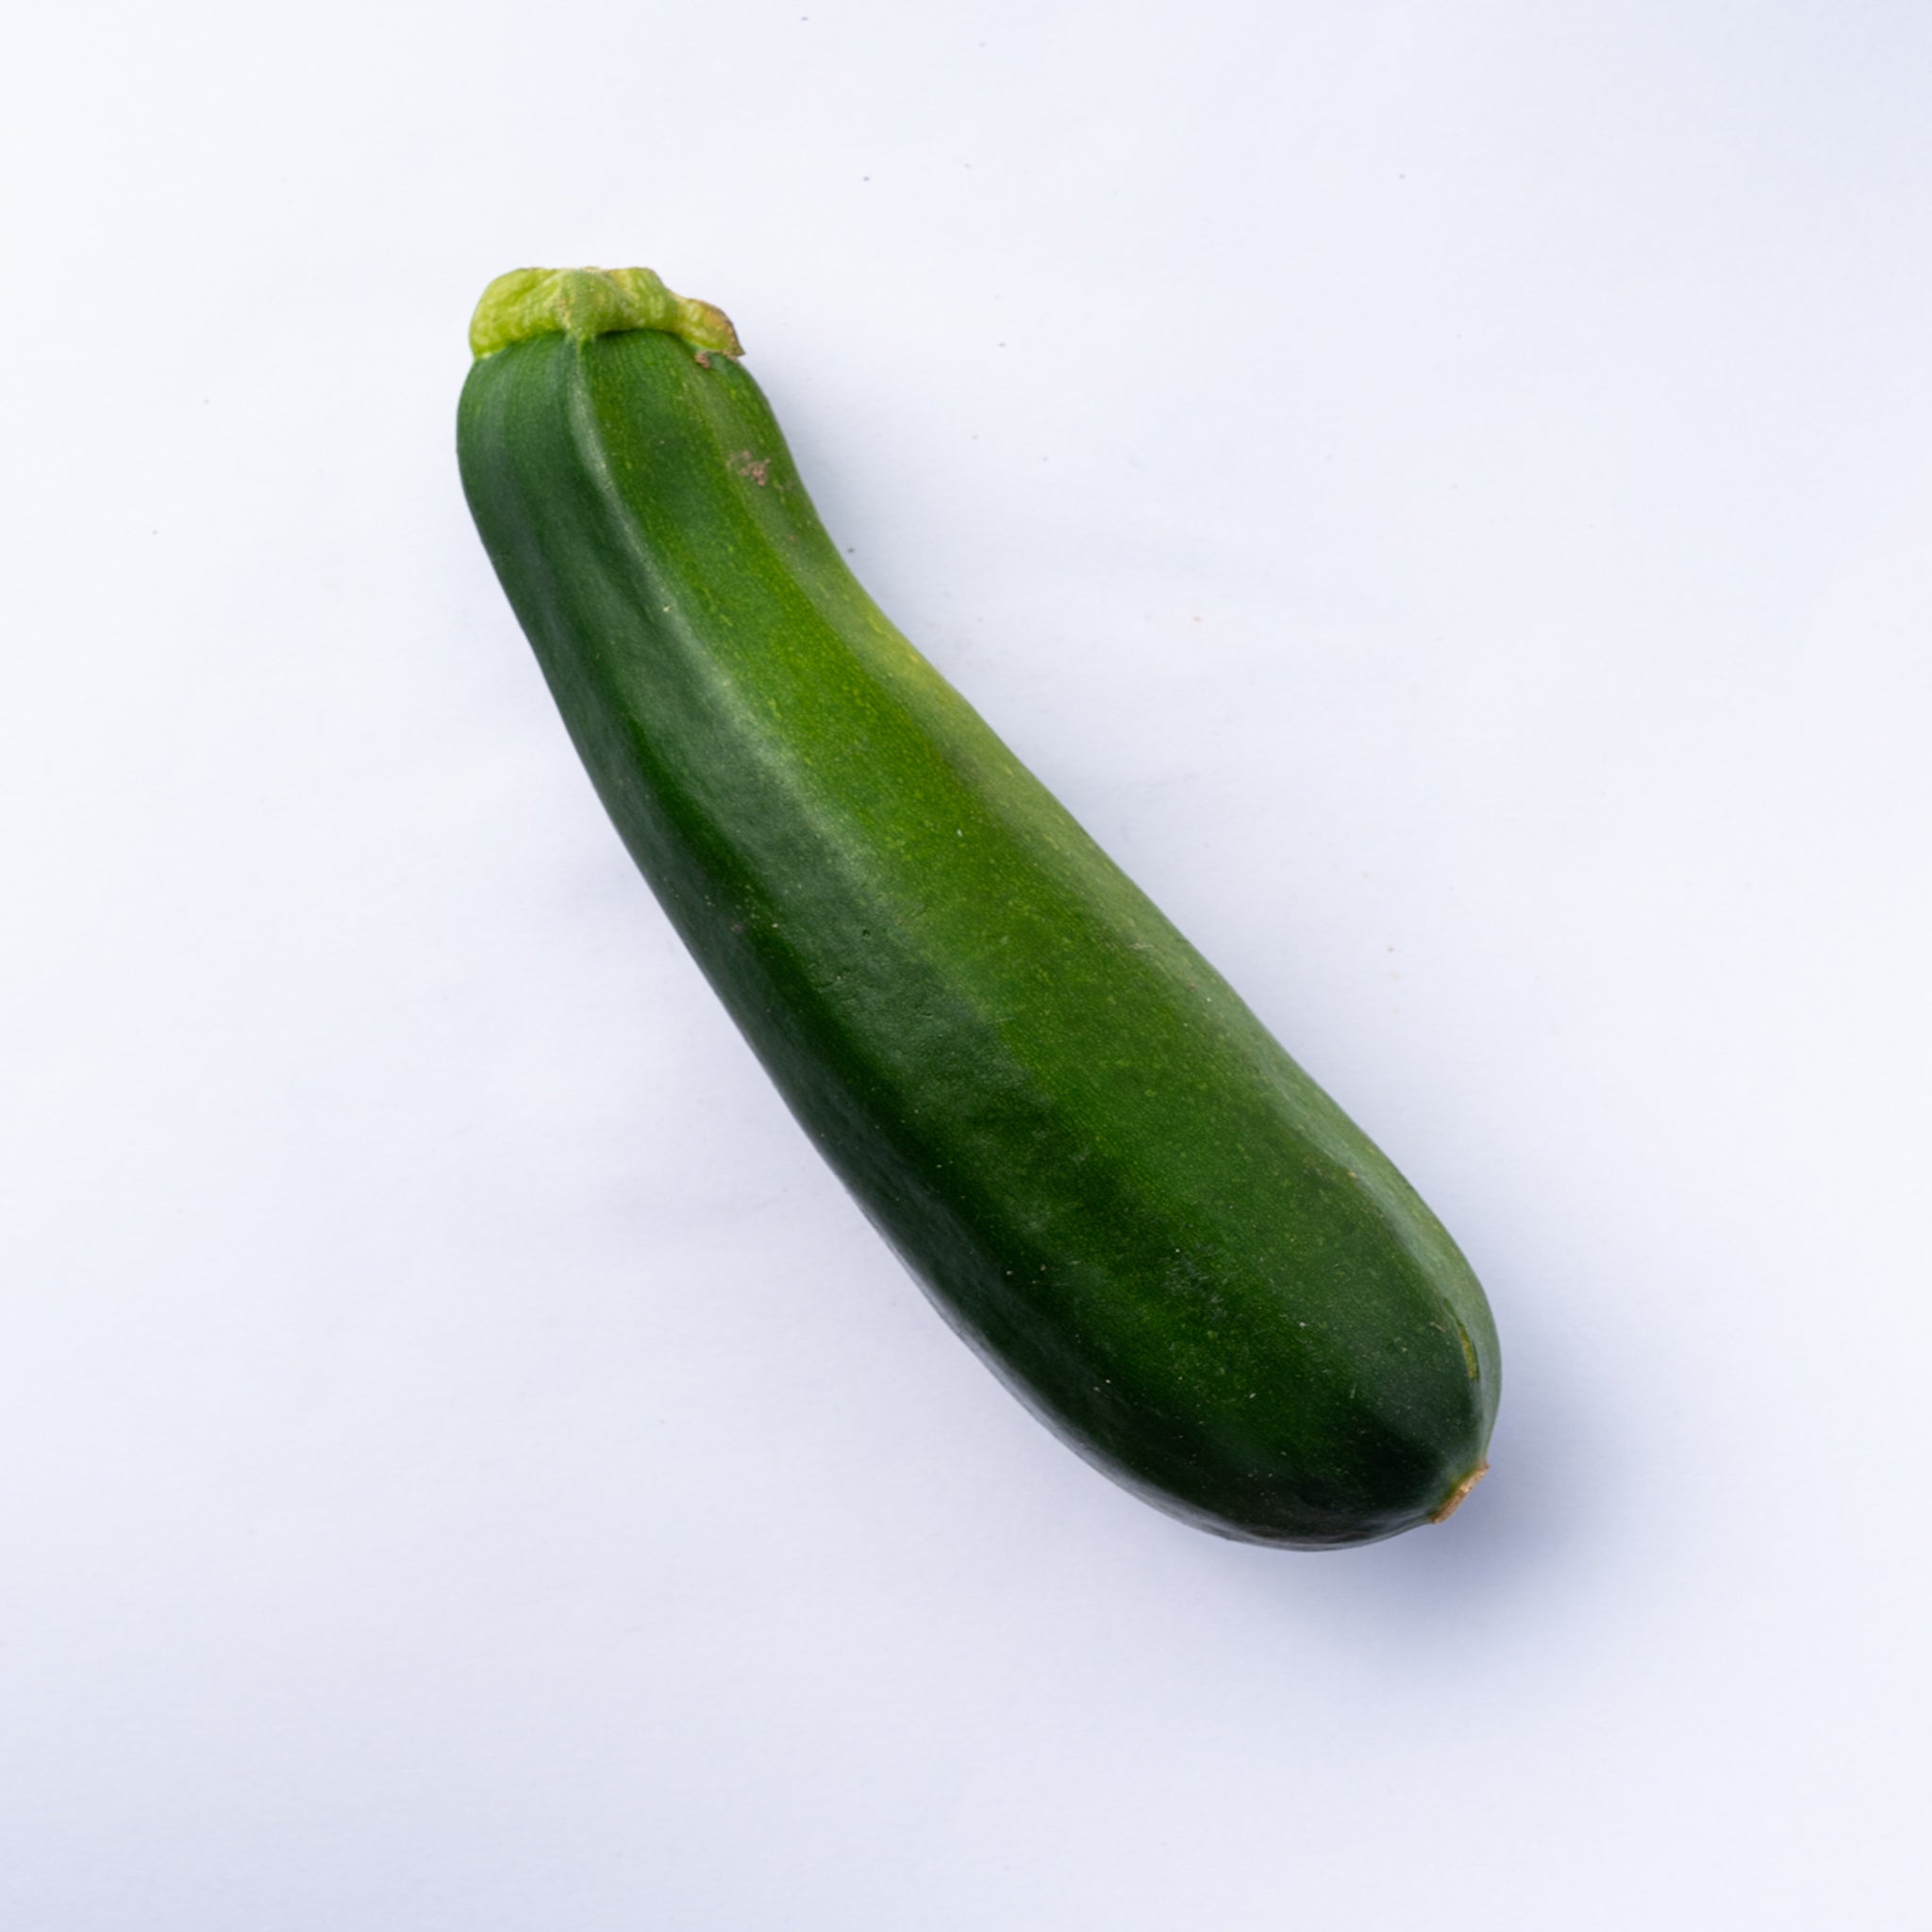 Zucchini / courgette